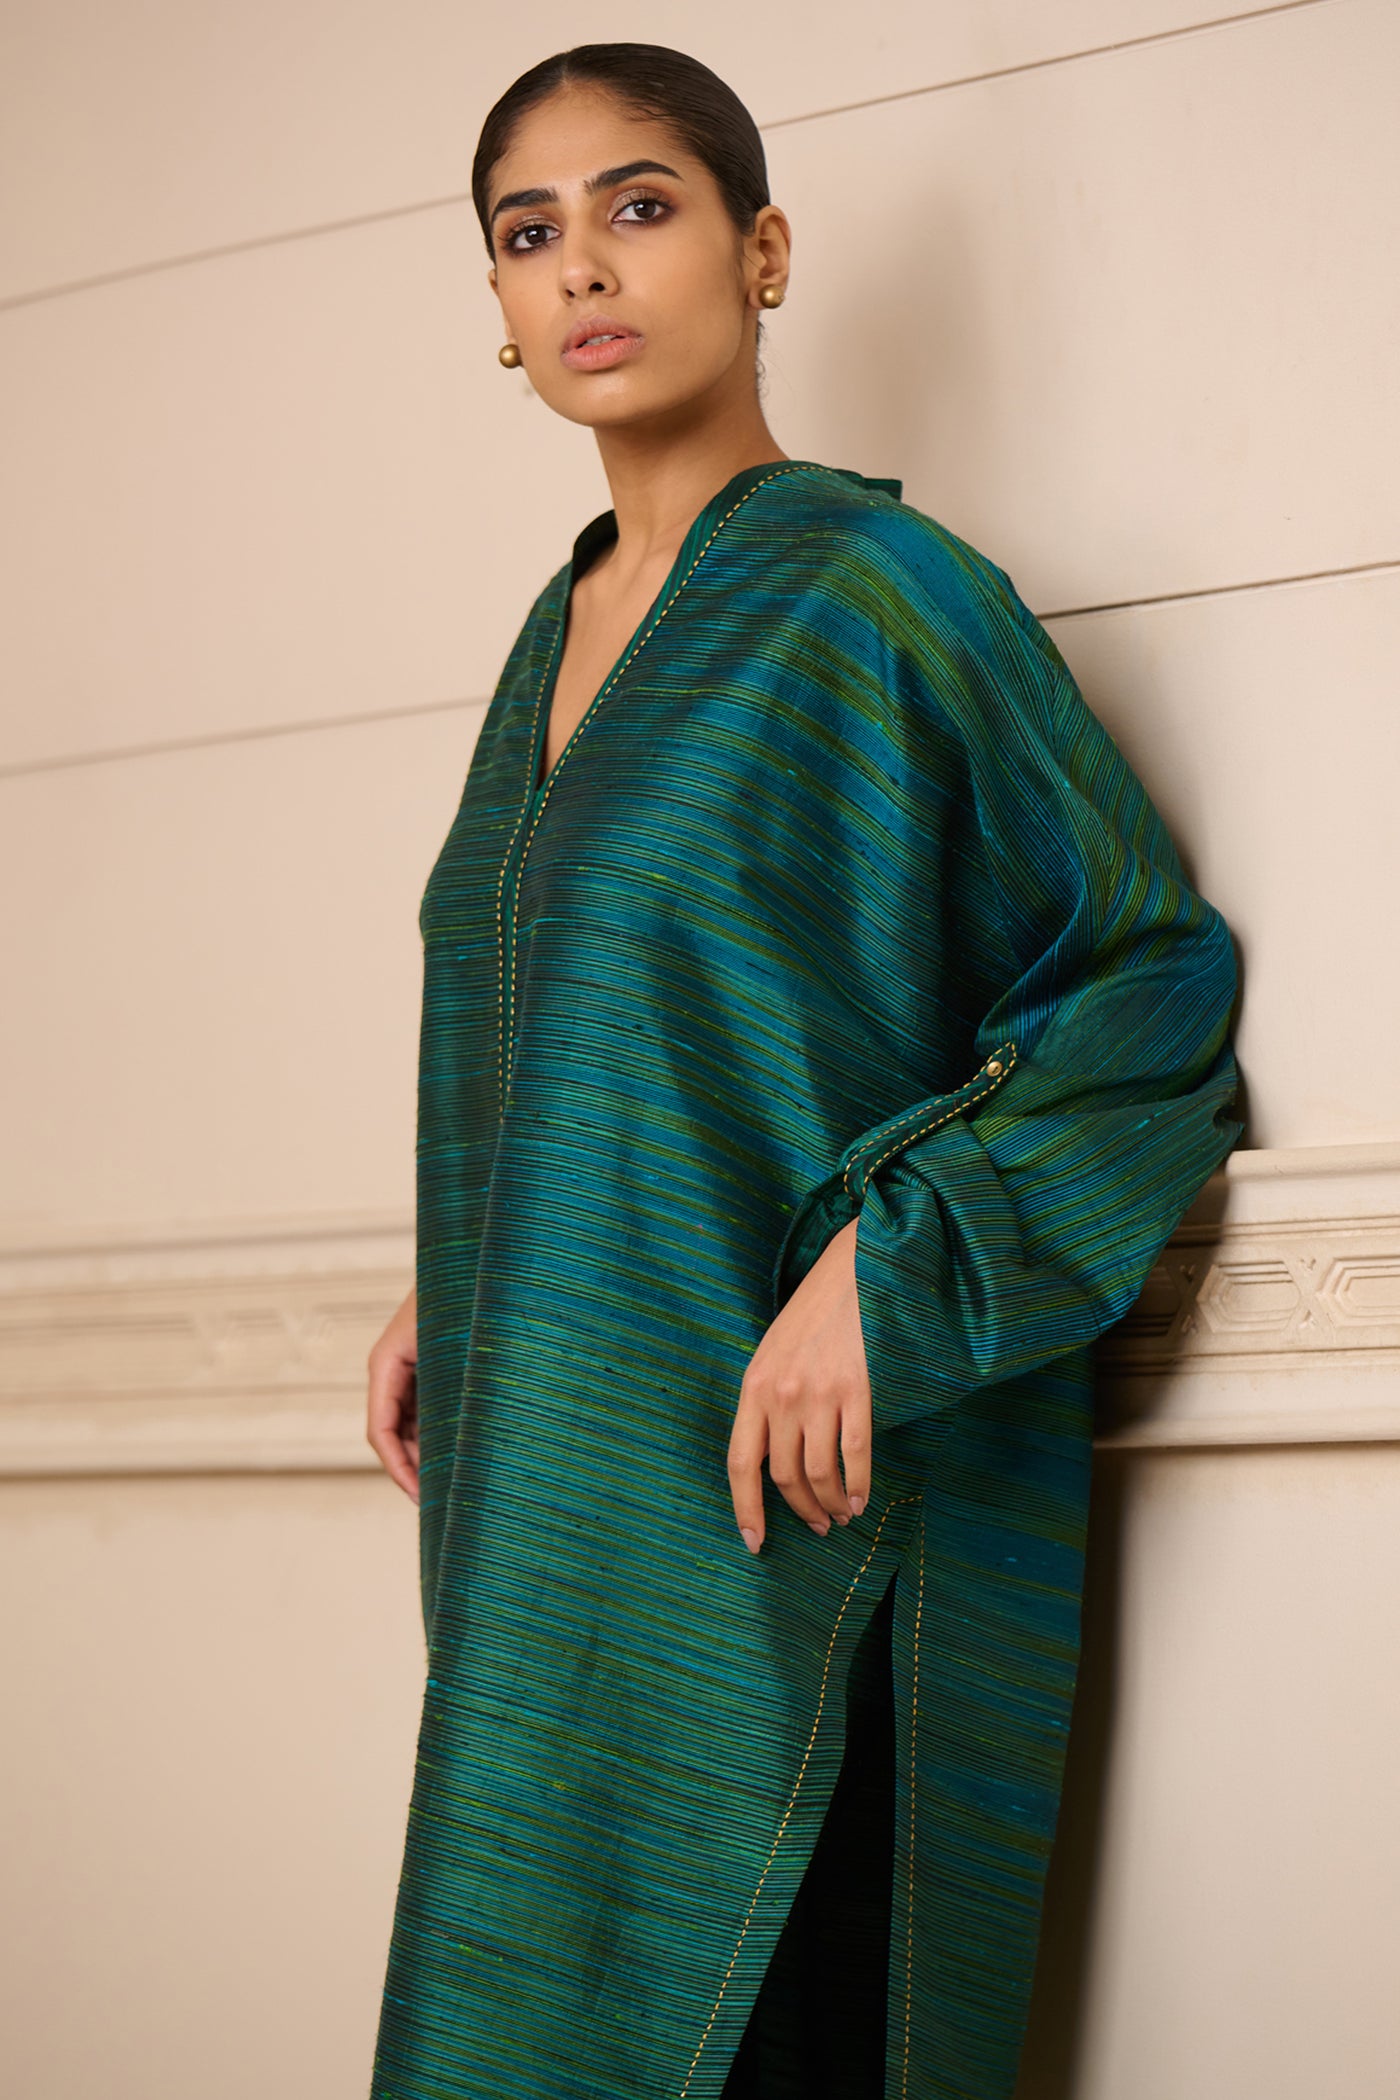 Tarun Tahiliani Tunic indian designer wear online shopping melange singapore